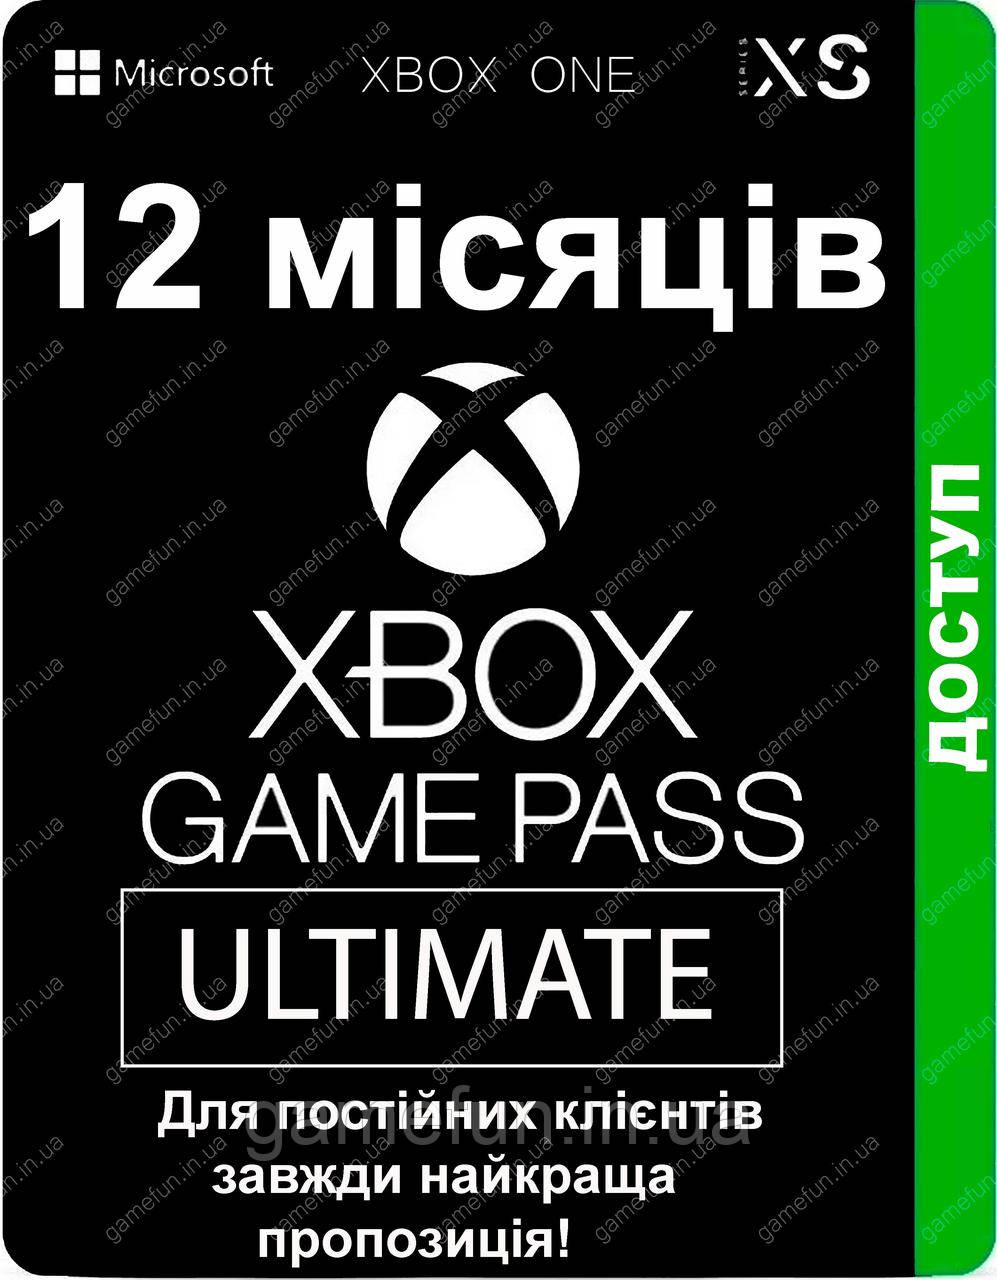 Xbox Game Pass Ultimate - 12 місяців (для постійних клієнтів) передплата